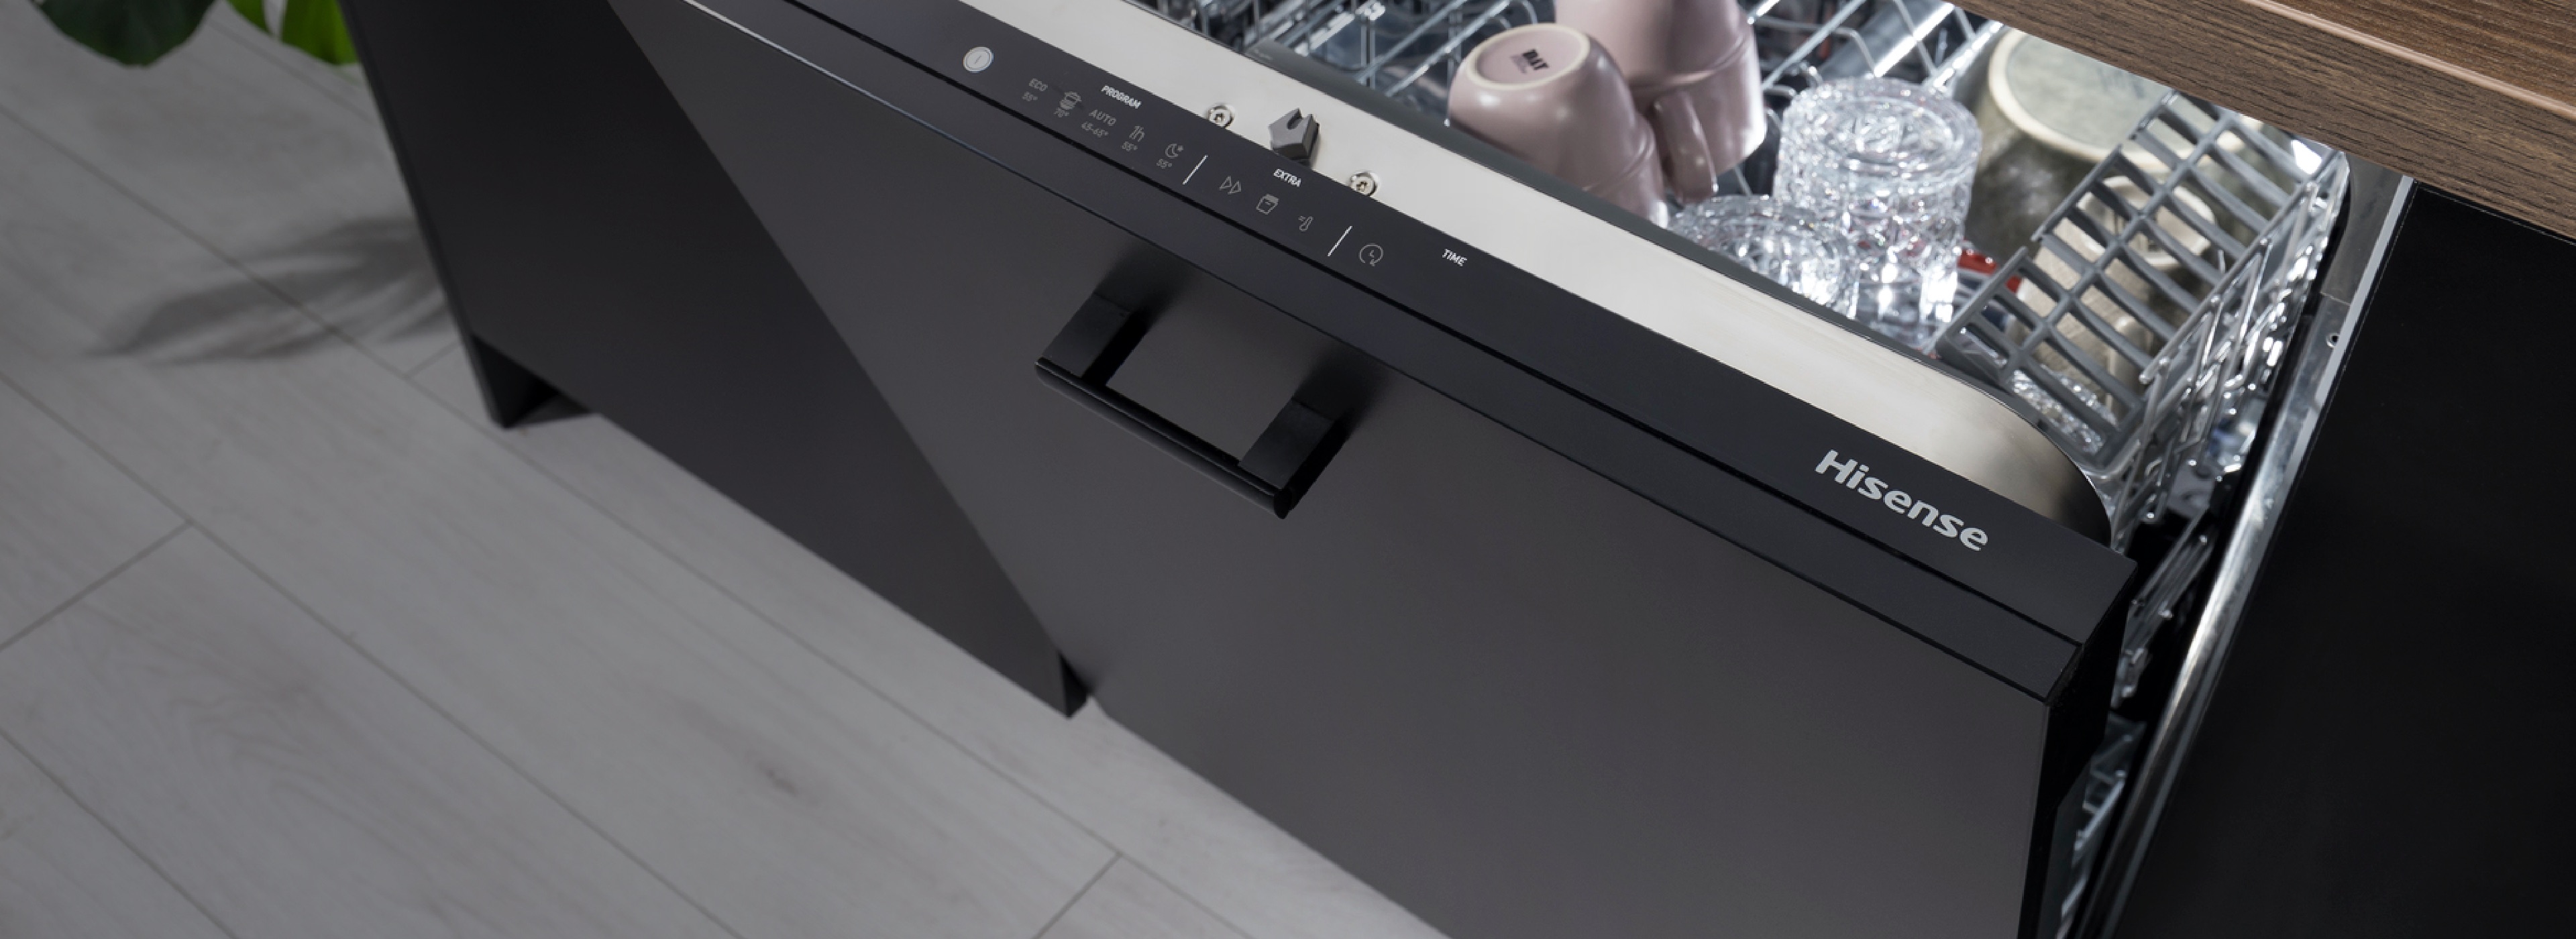 HV672C60UK Integrated Dishwasher Promotion banner